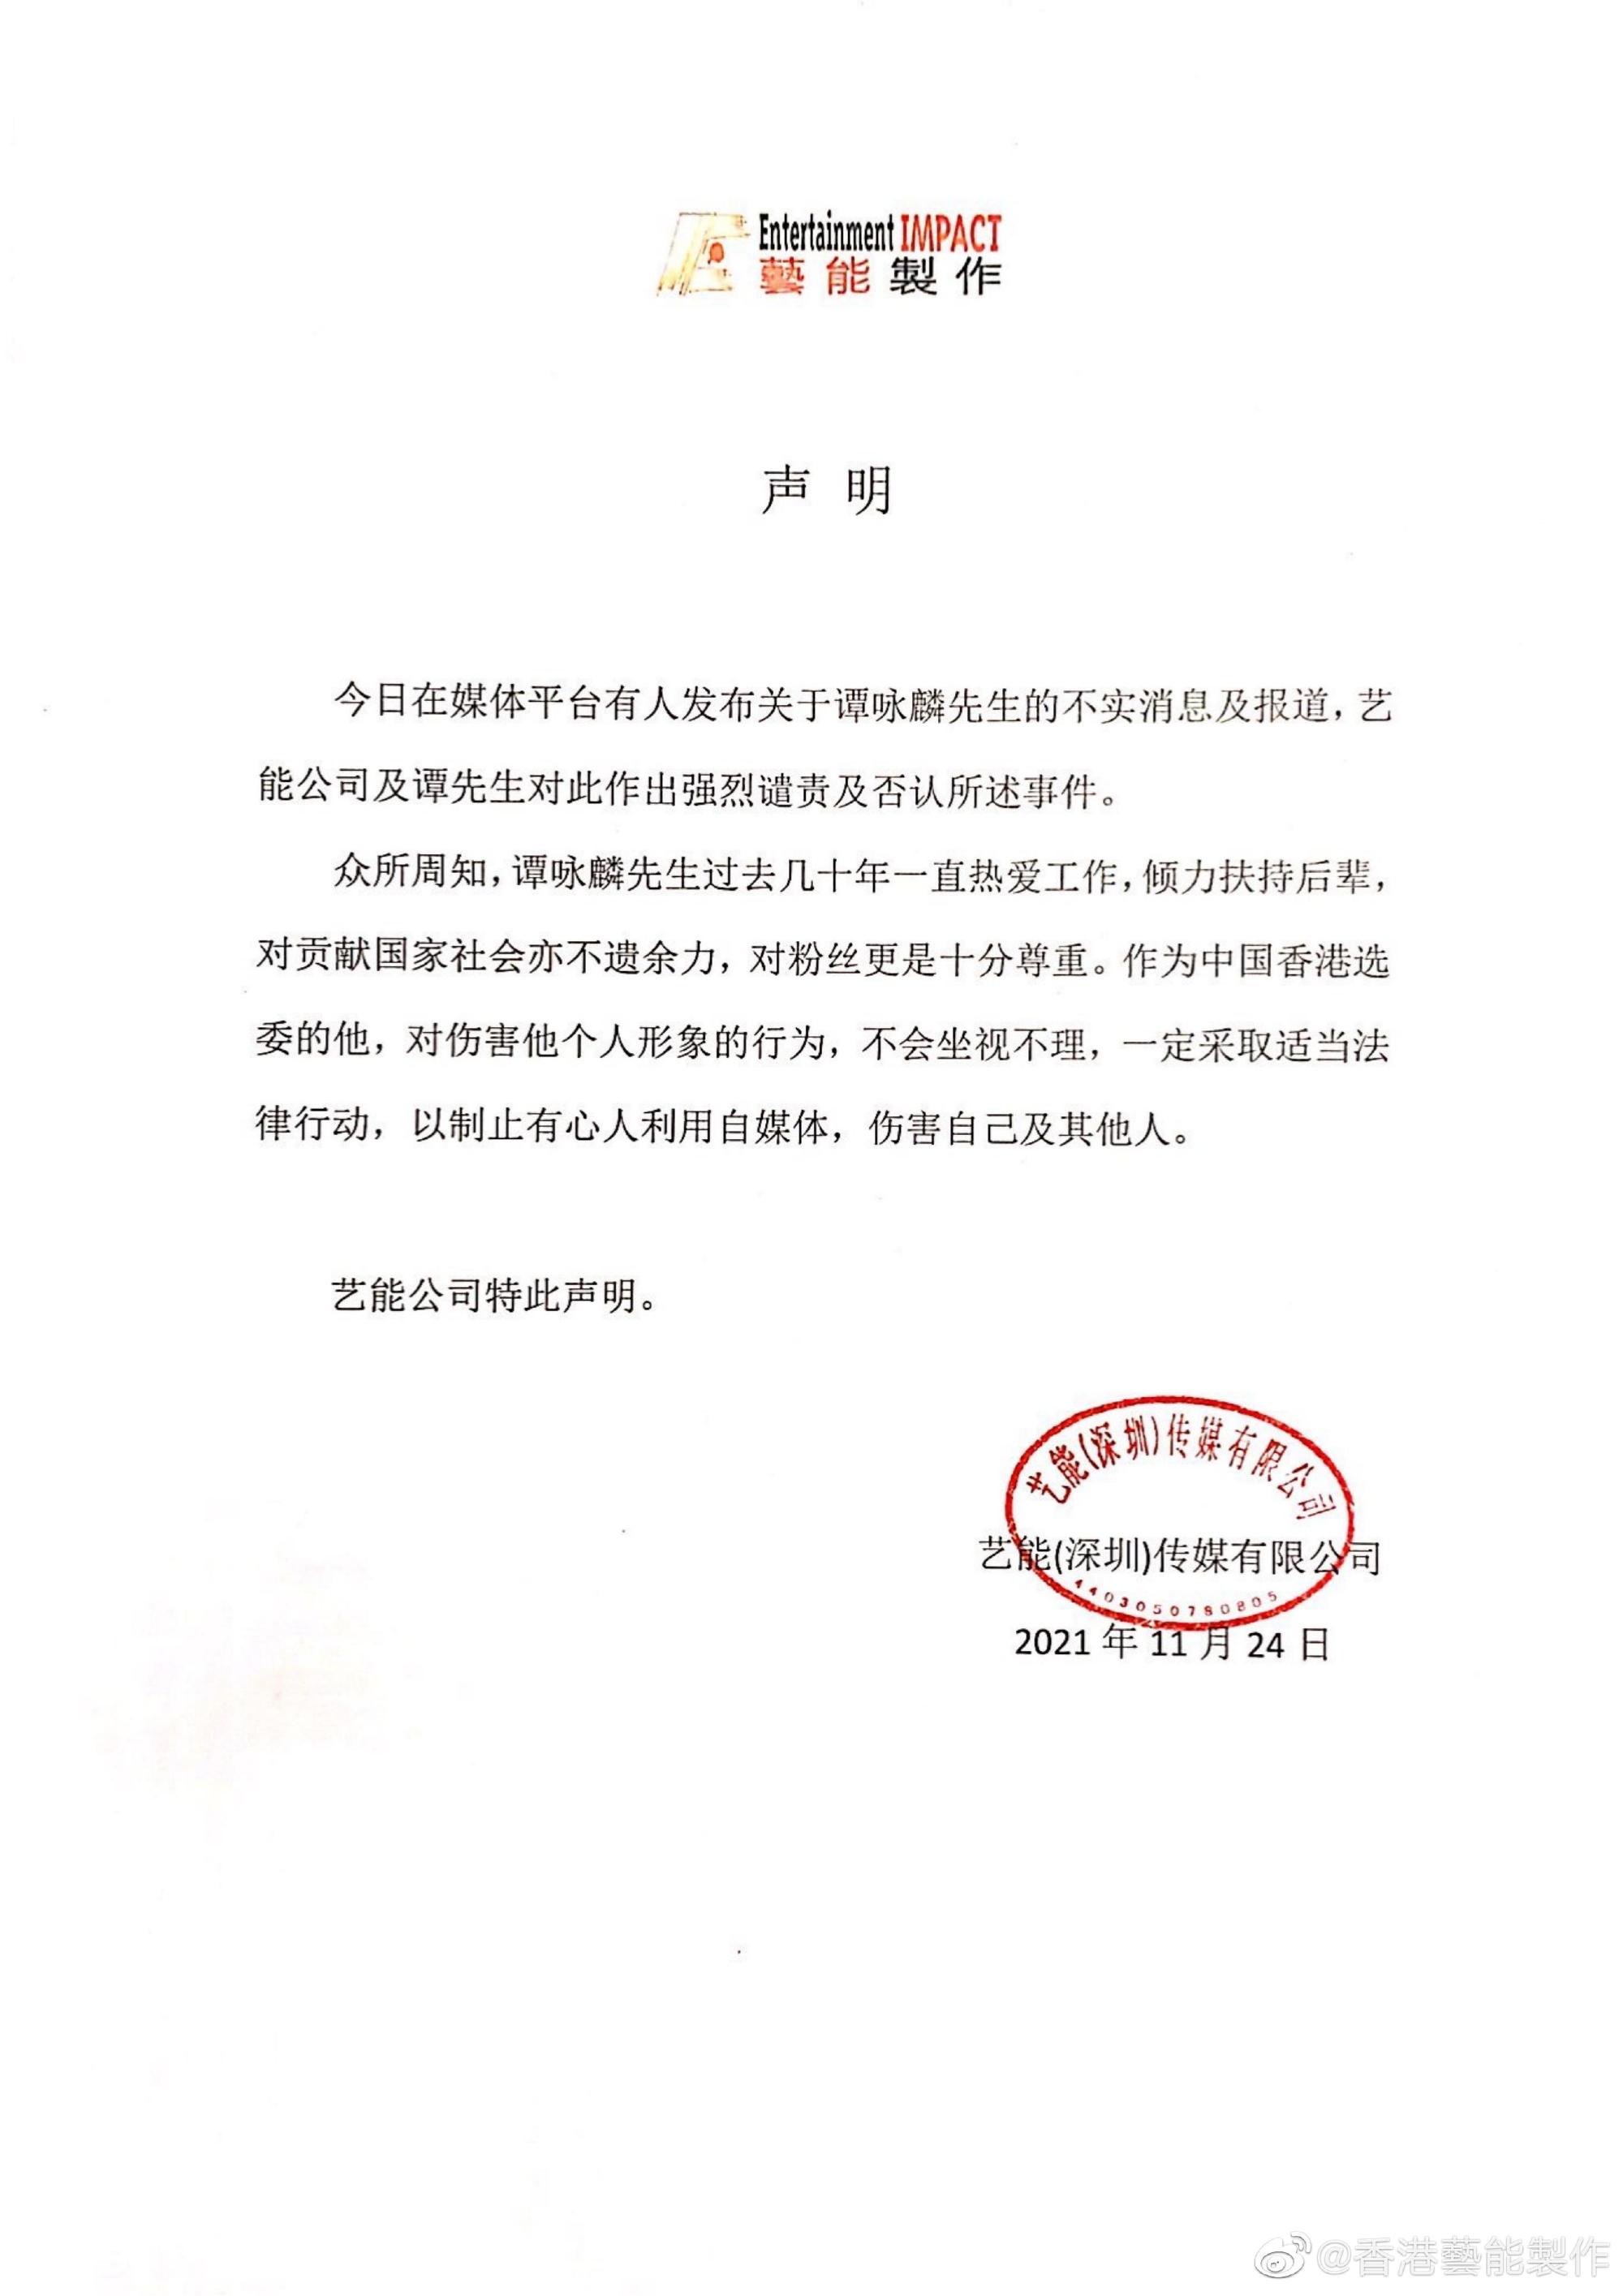 香港艺能制作发布声明：强烈谴责关于谭咏麟不实消息-第1张图片-信无双3-娱乐/平台